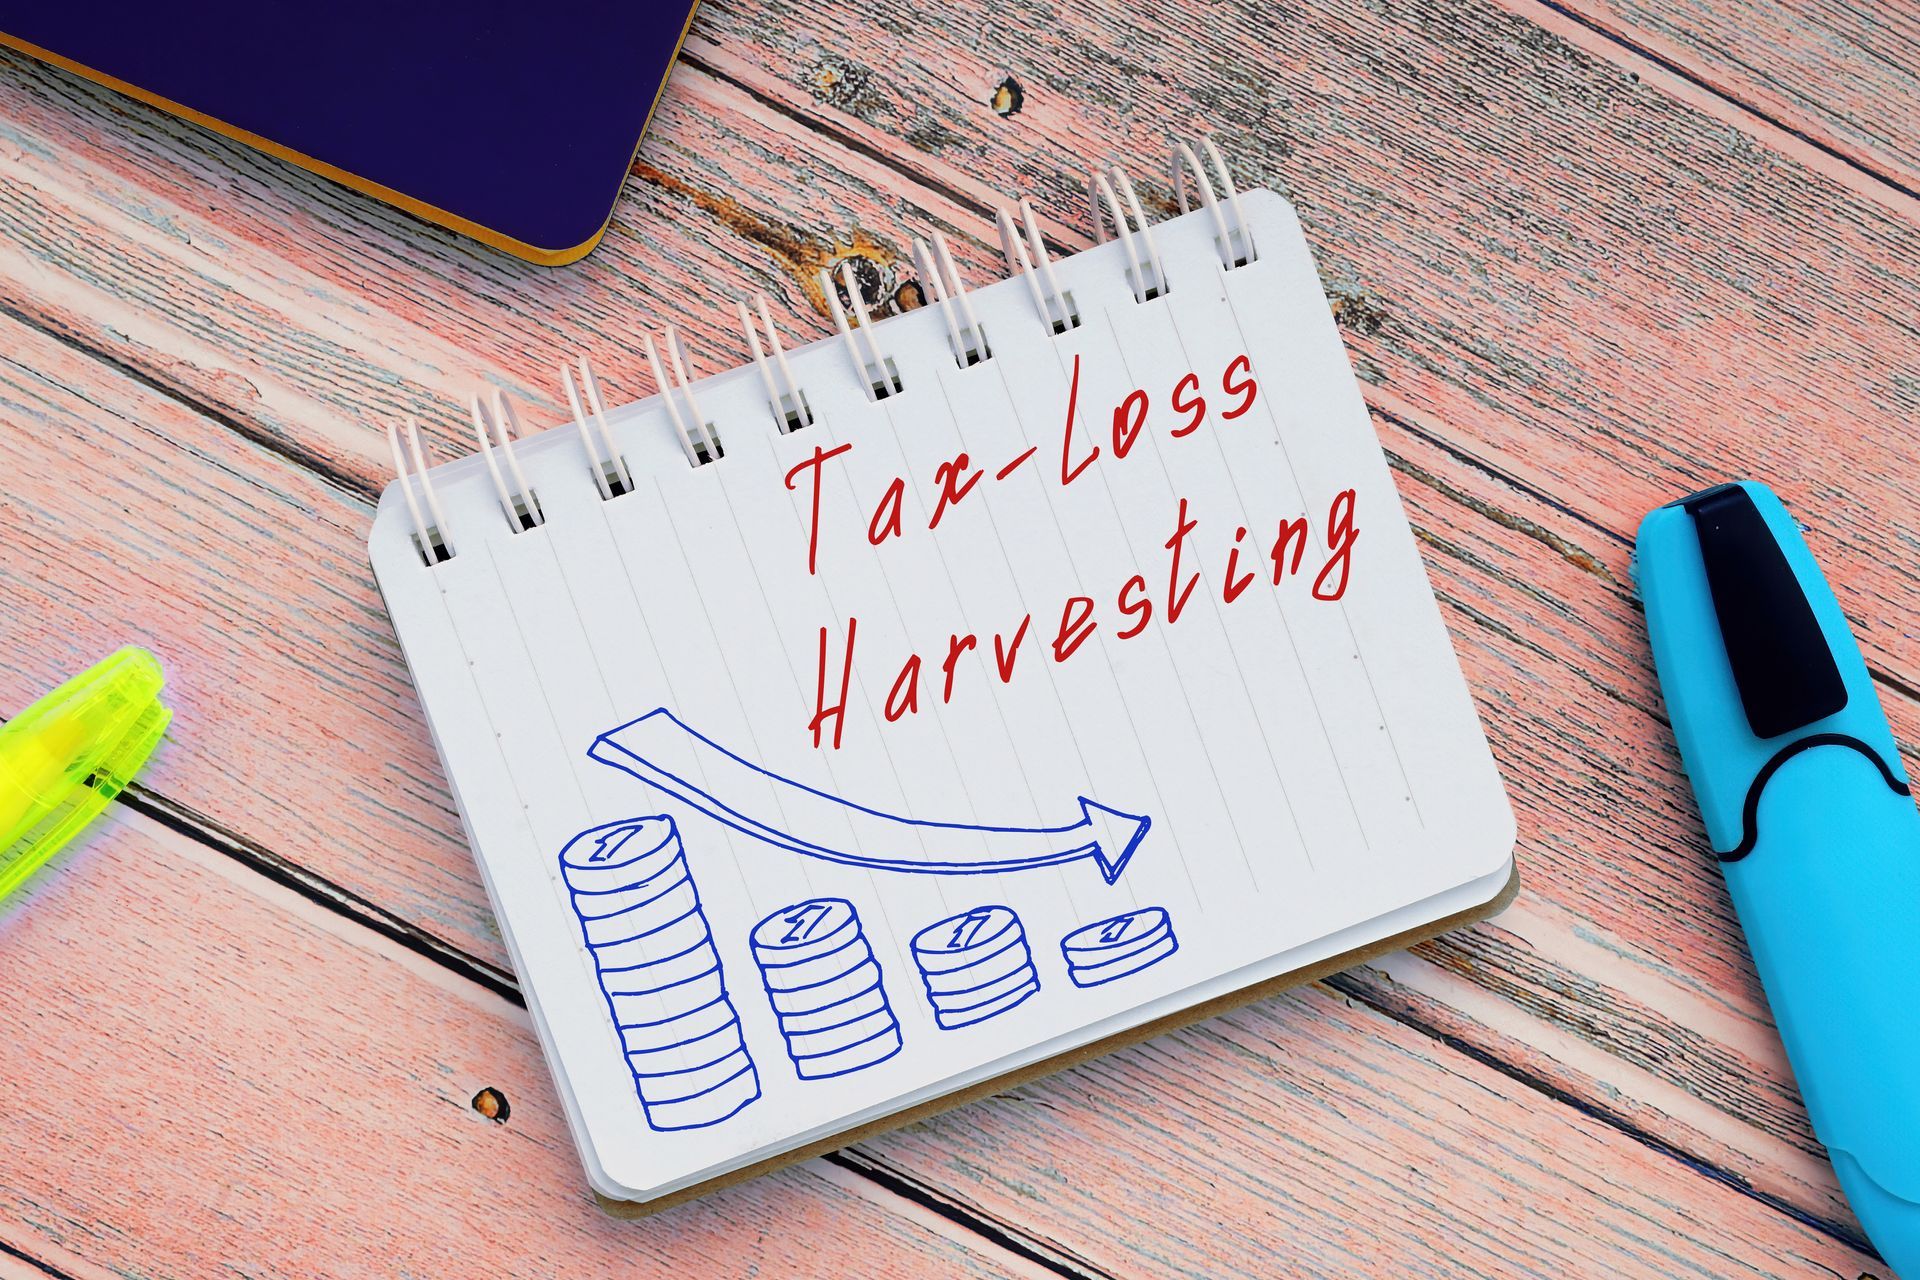 Tax loss harvesting